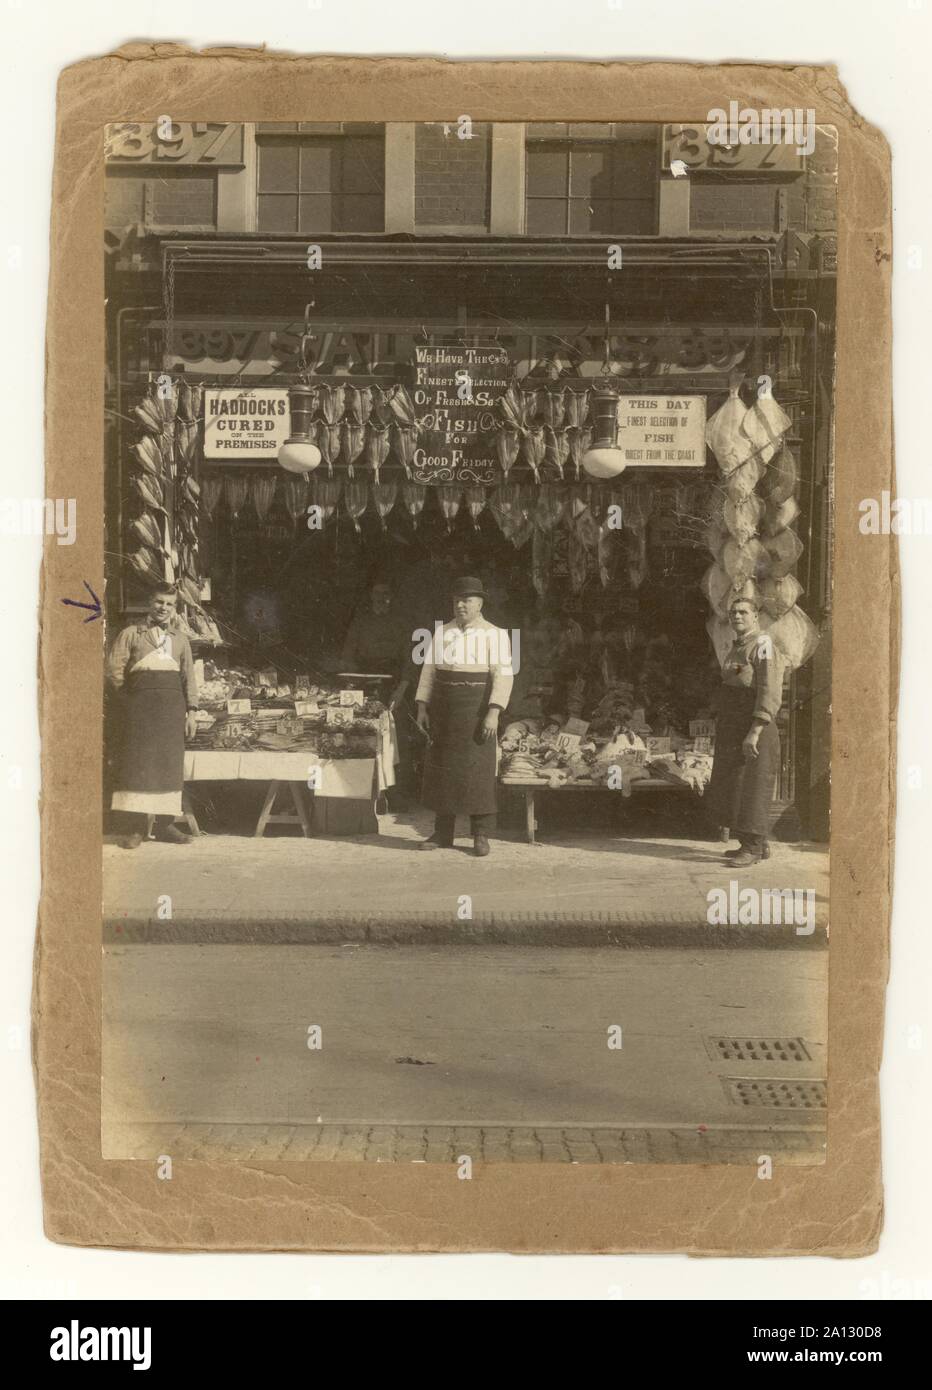 Début de 1900 WW1 photo ère de poissonniers, Signalisation 'haddocks guéri dans les locaux' Lavender Hill, Londres, Royaume-Uni 1914-1918 Banque D'Images